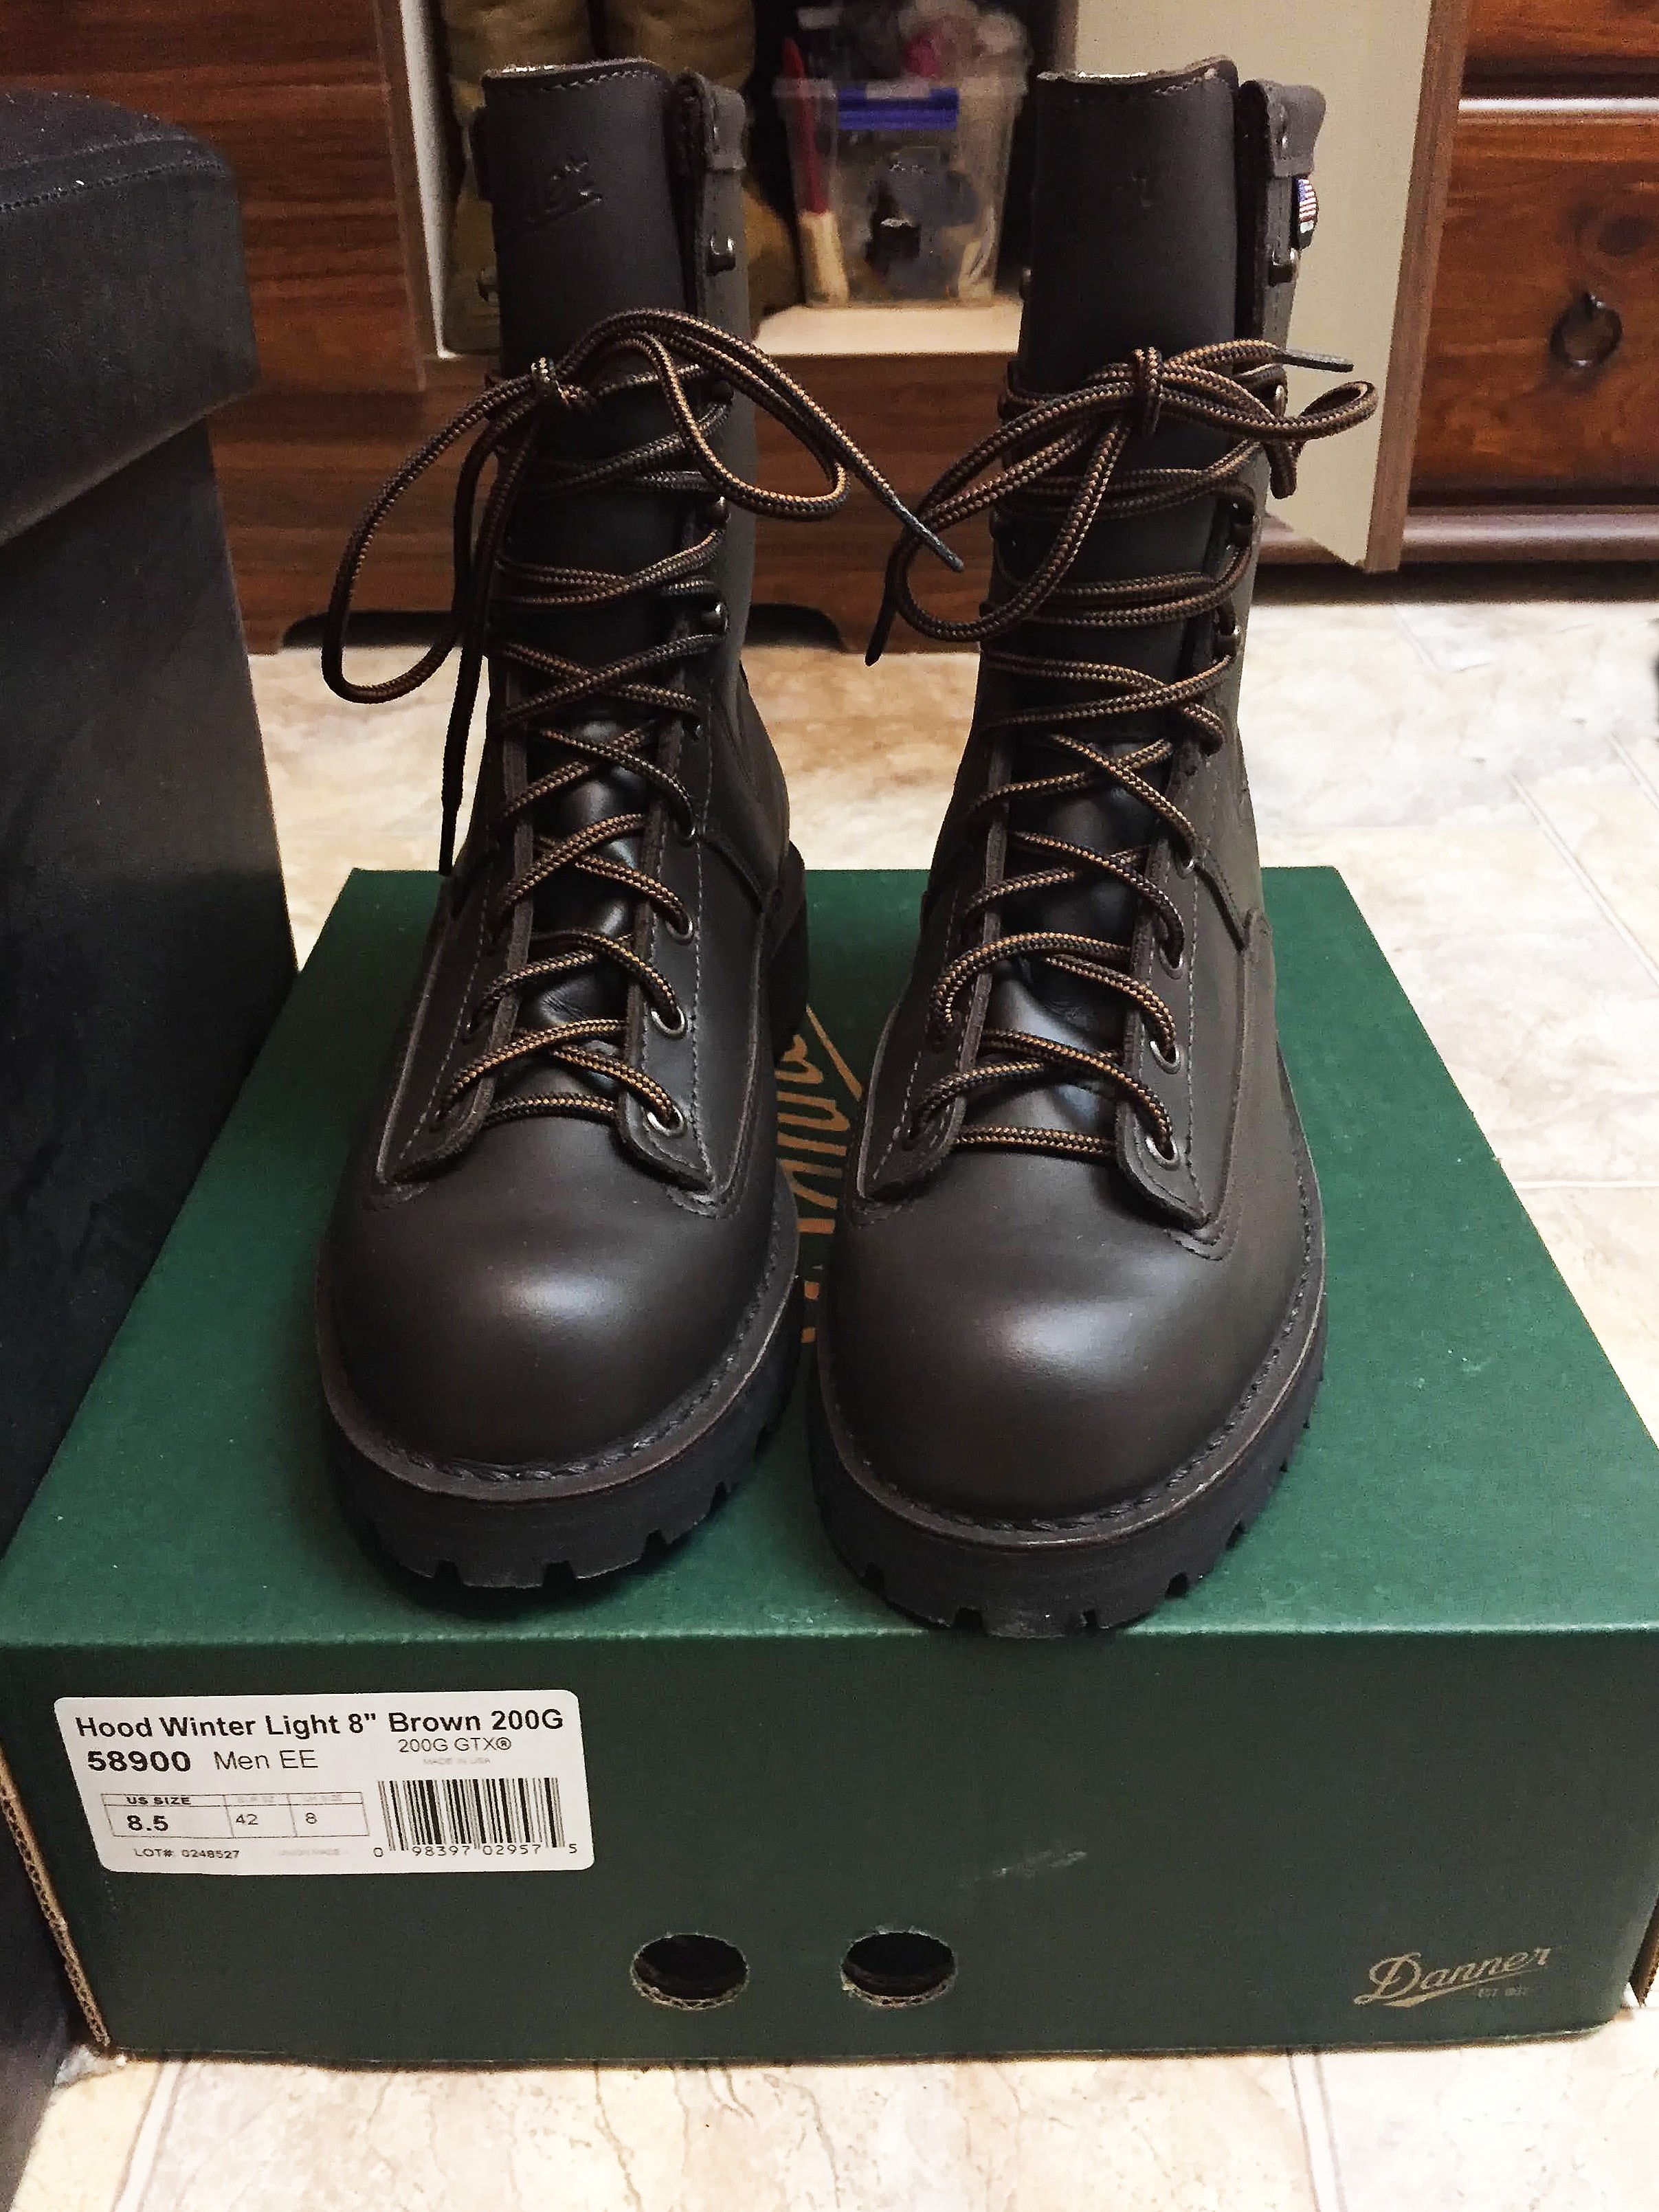 Danner Hood Winter Light 8" Brown Boots